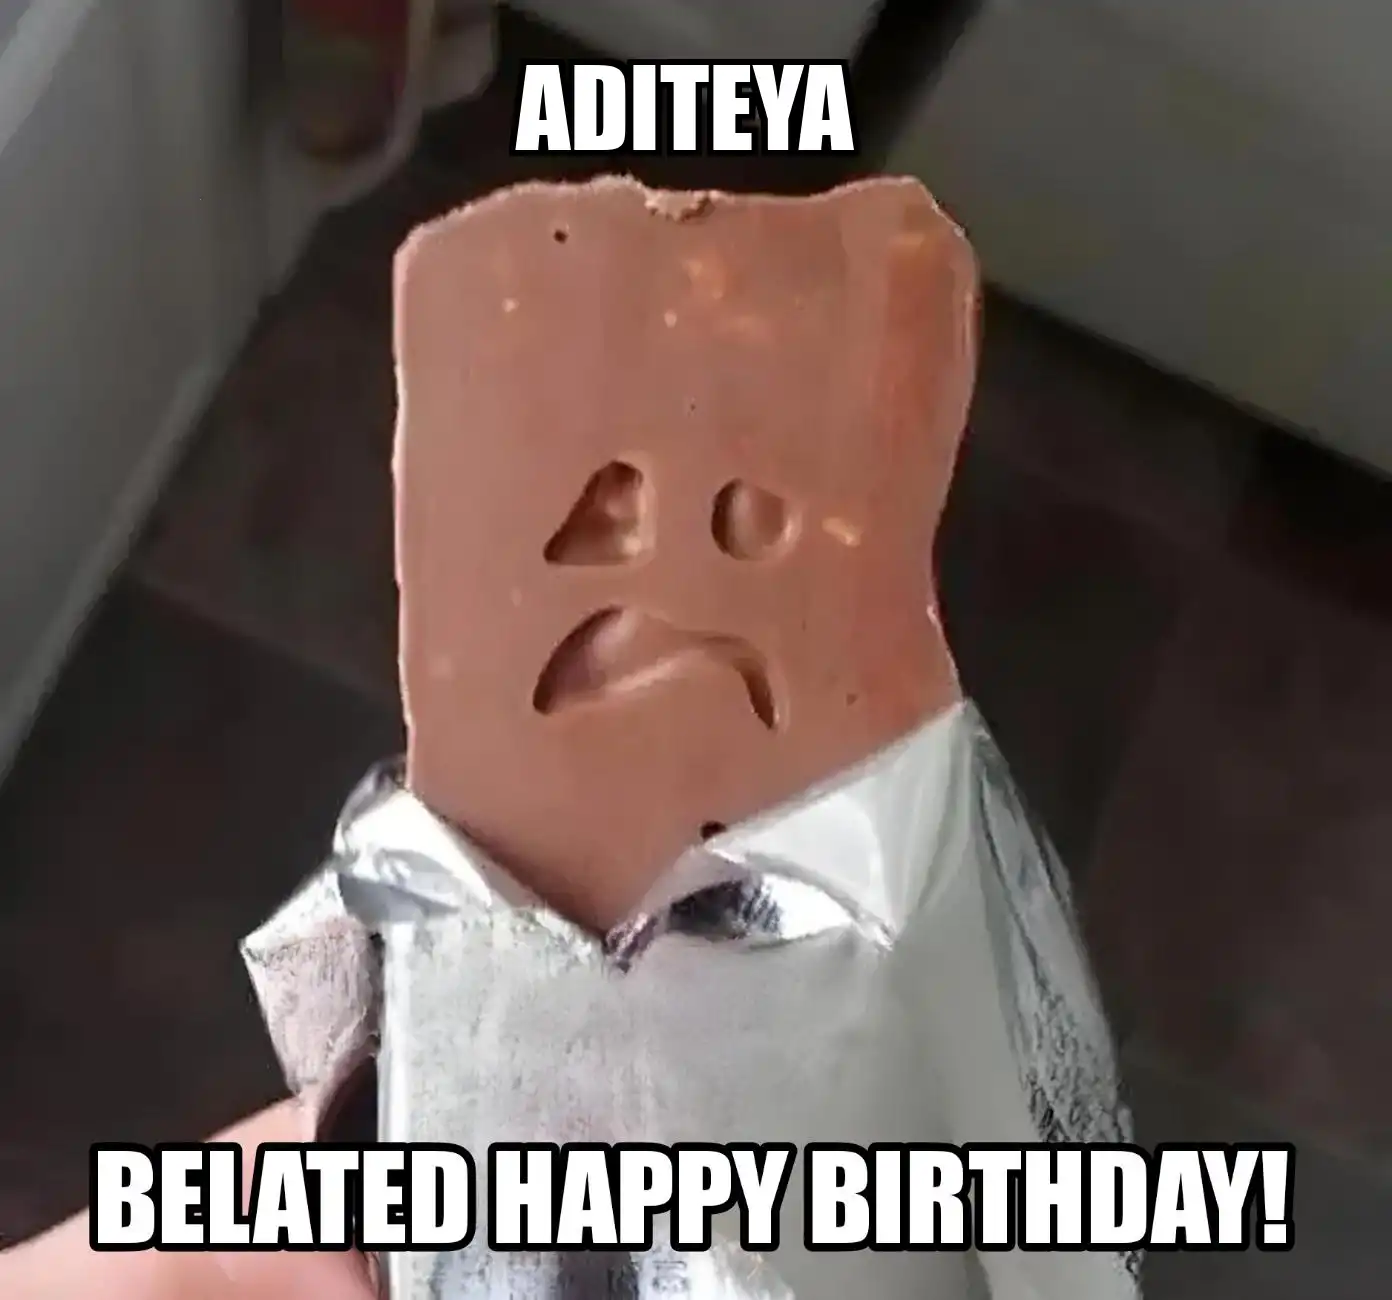 Happy Birthday Aditeya Belated Happy Birthday Meme